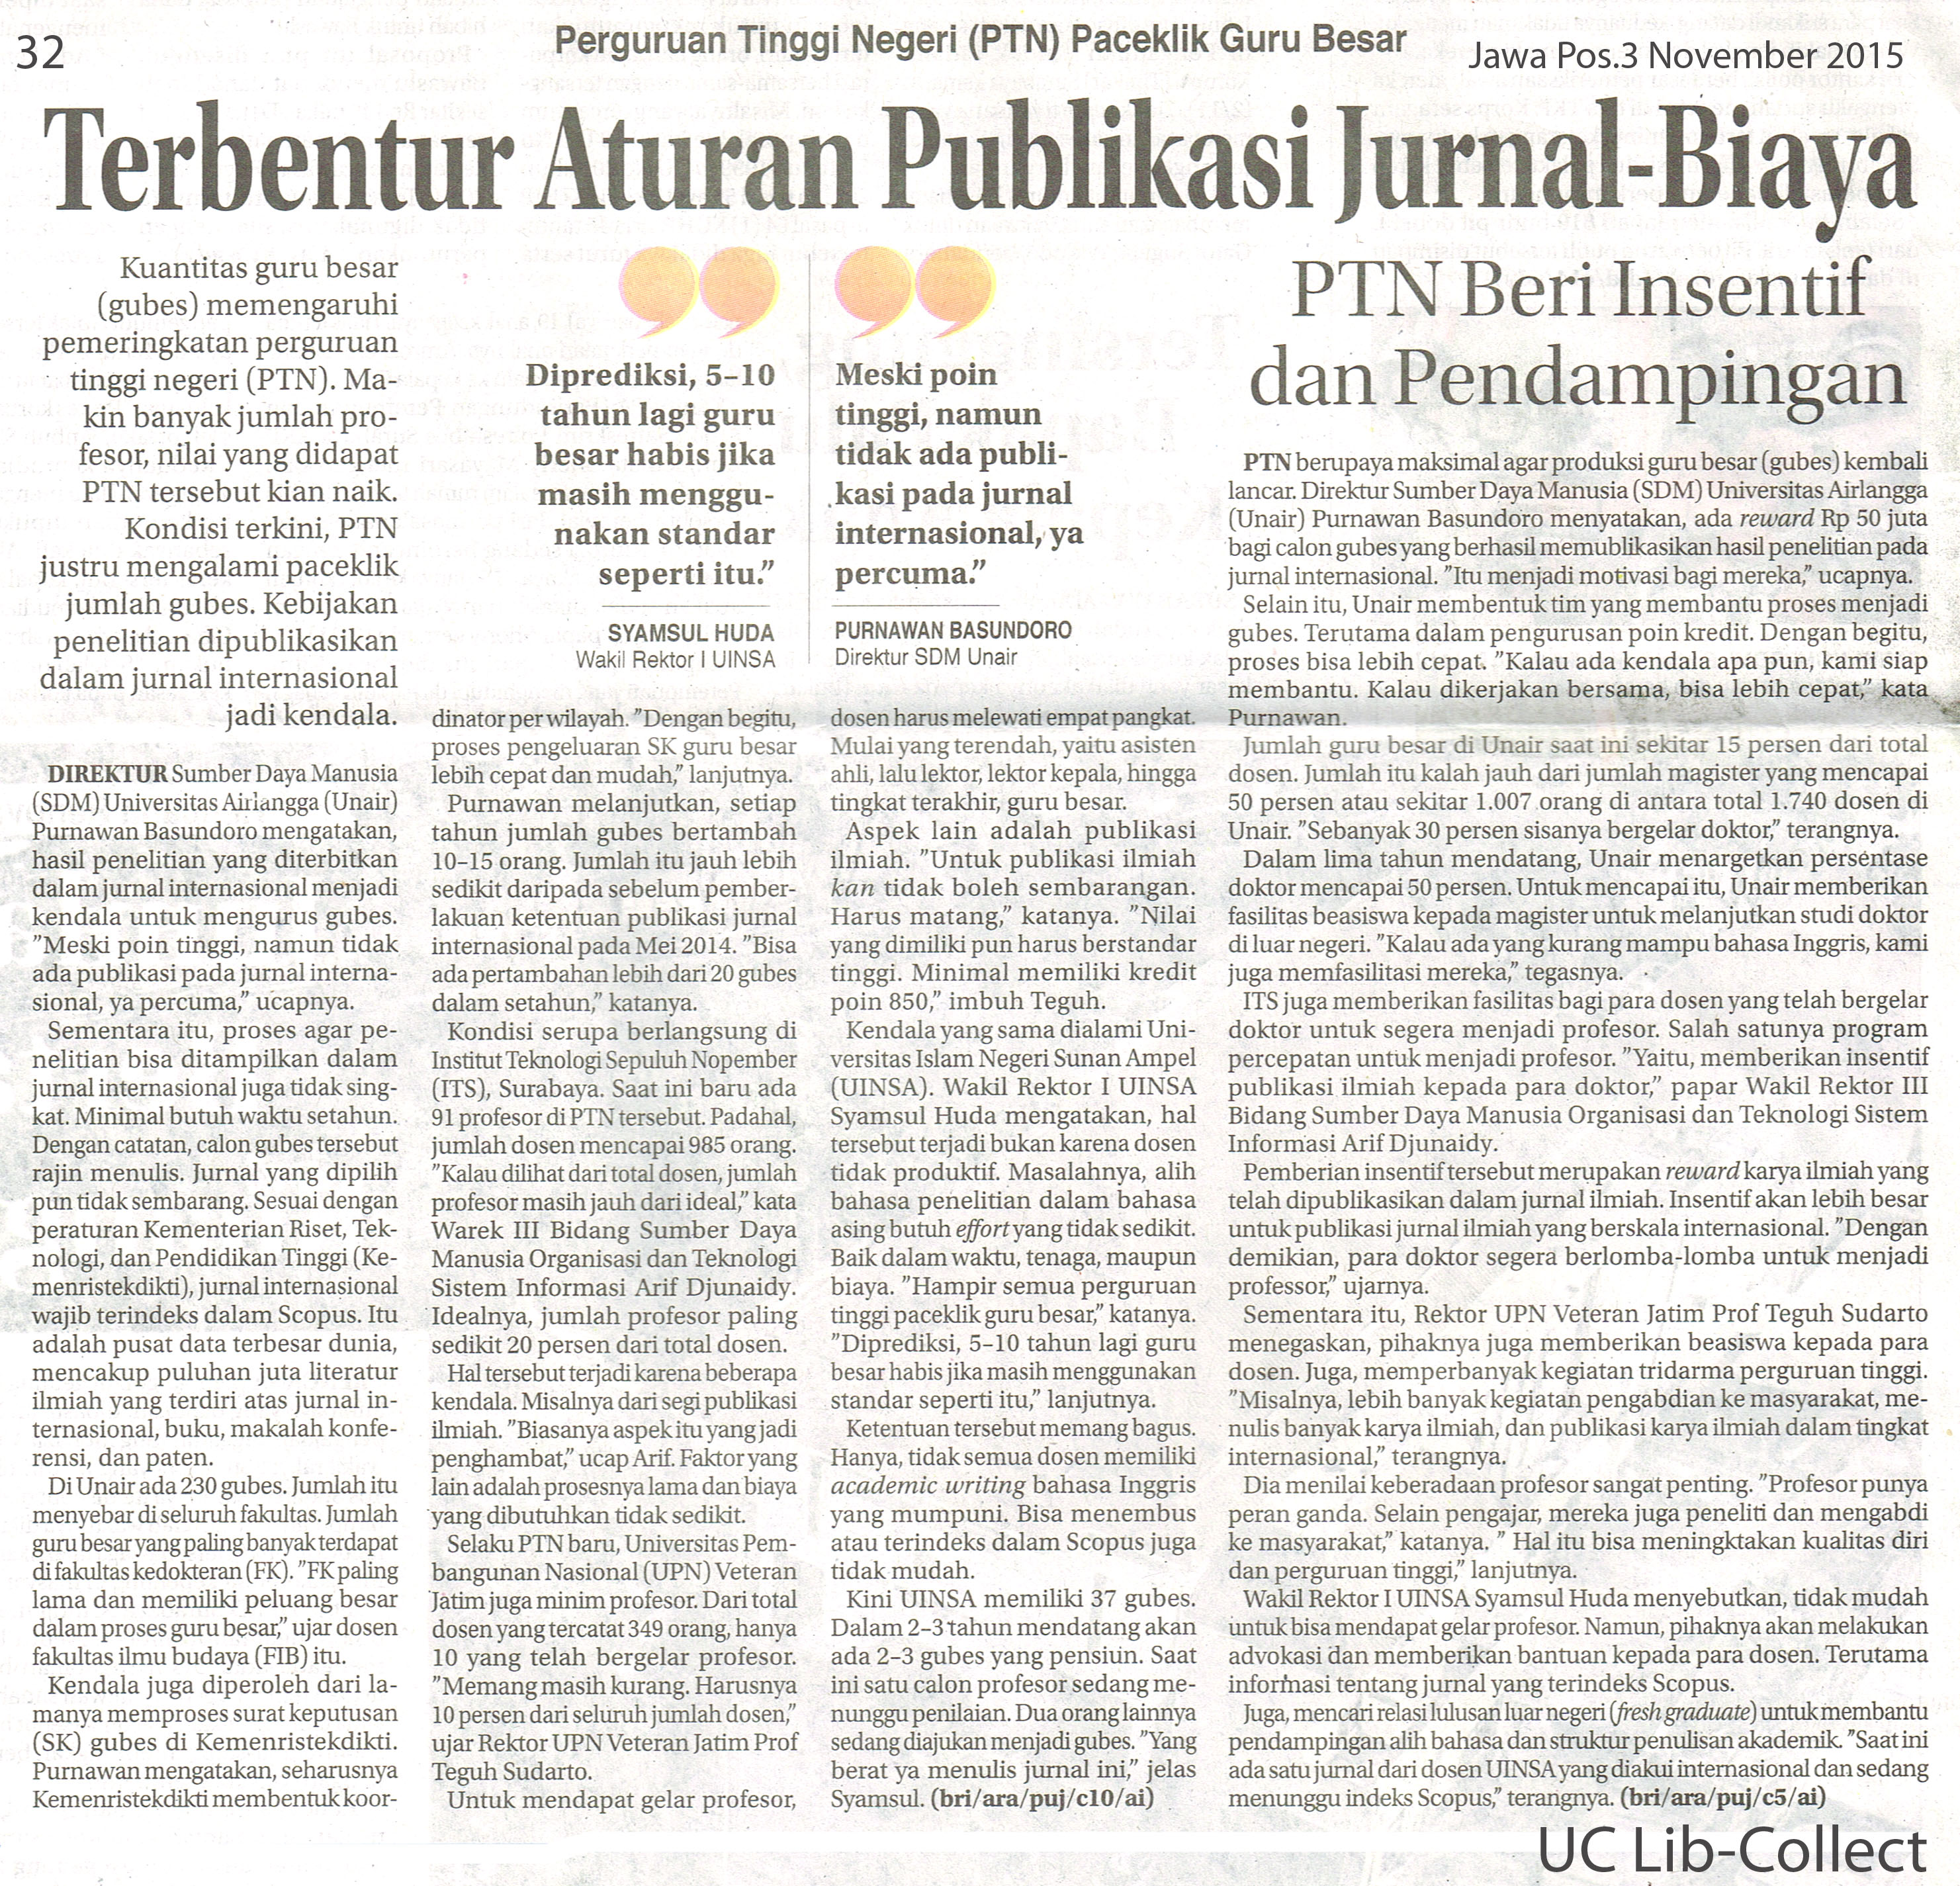 Terbentur Aturan Publikasi Jurnal-Biaya. Jawa Pos.3 November 2015.Hal.32